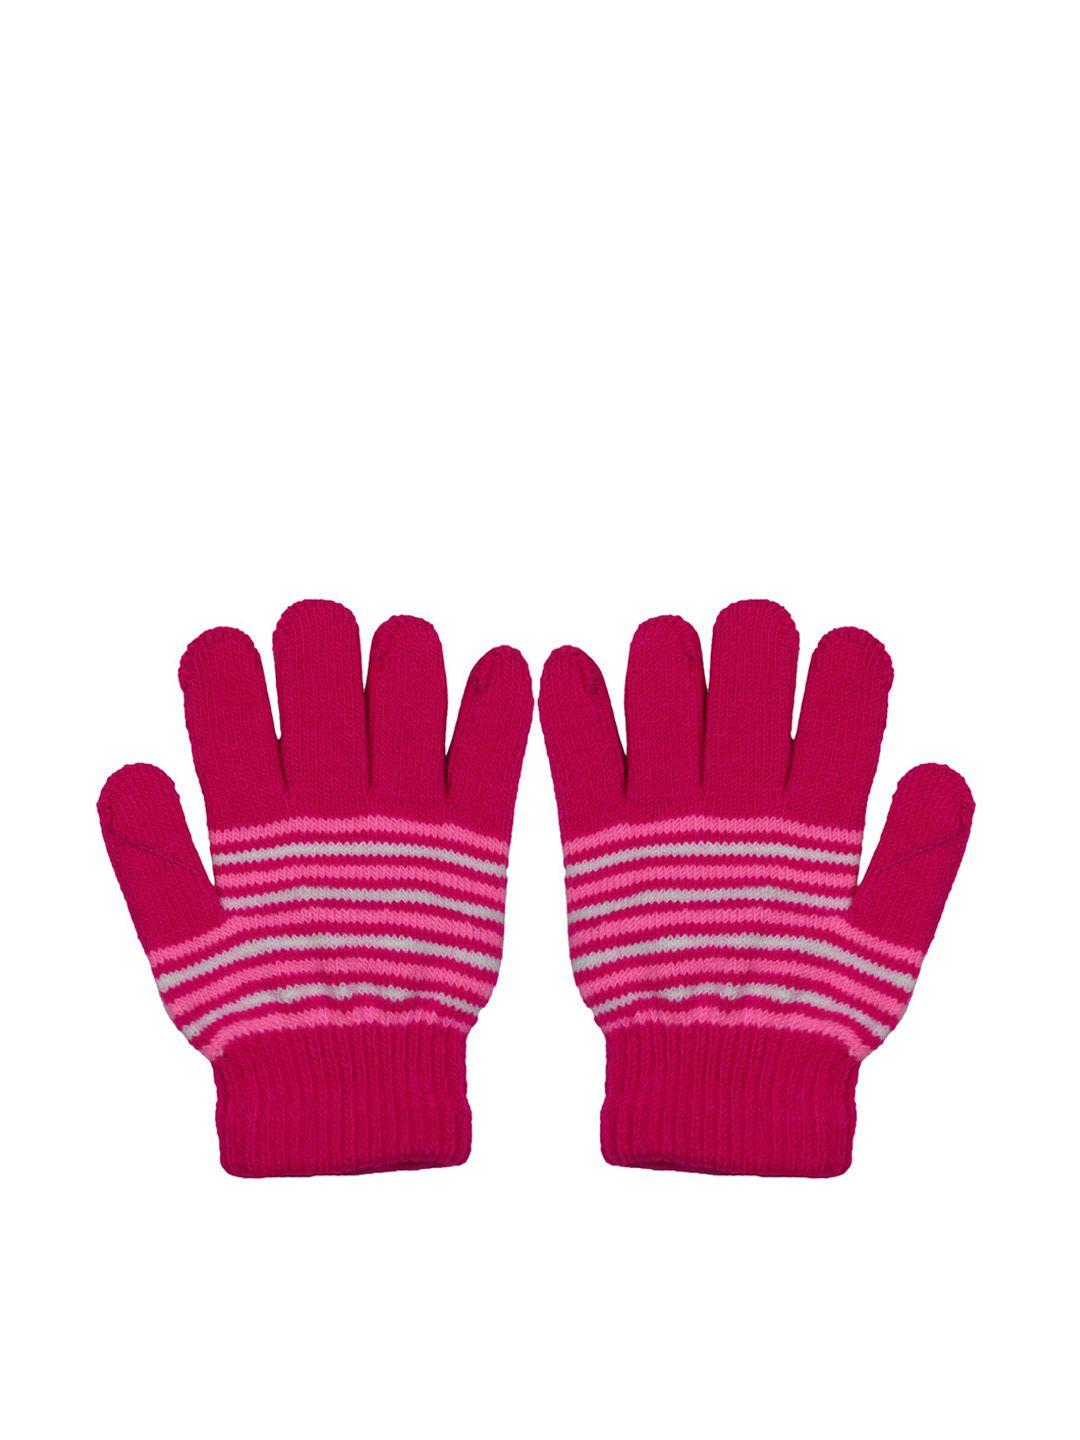 baesd kids striped woollen winter gloves